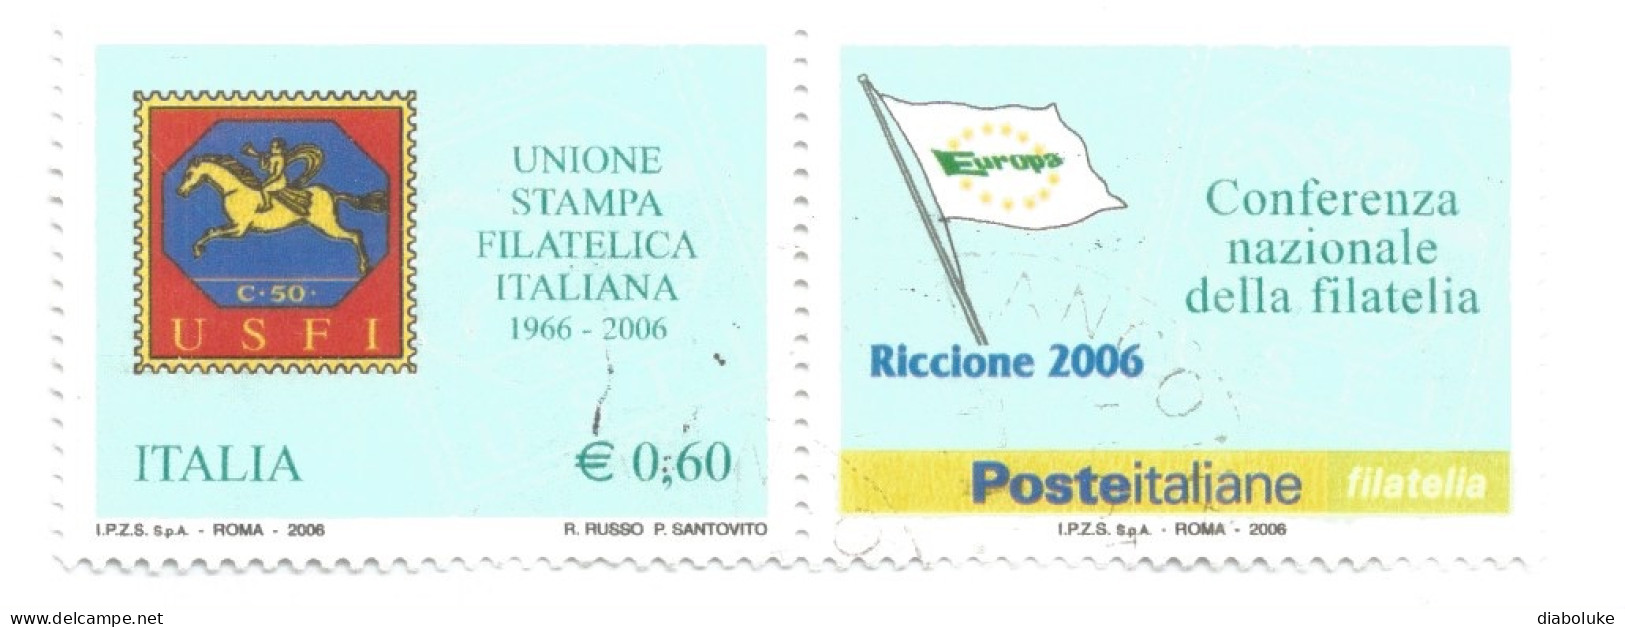 (REPUBBLICA ITALIANA) 2006, UNIONE STAMPA FILATELICA ITALIANA - Serie Di 1 Francobollo Usato Con Appendice - 2001-10: Used